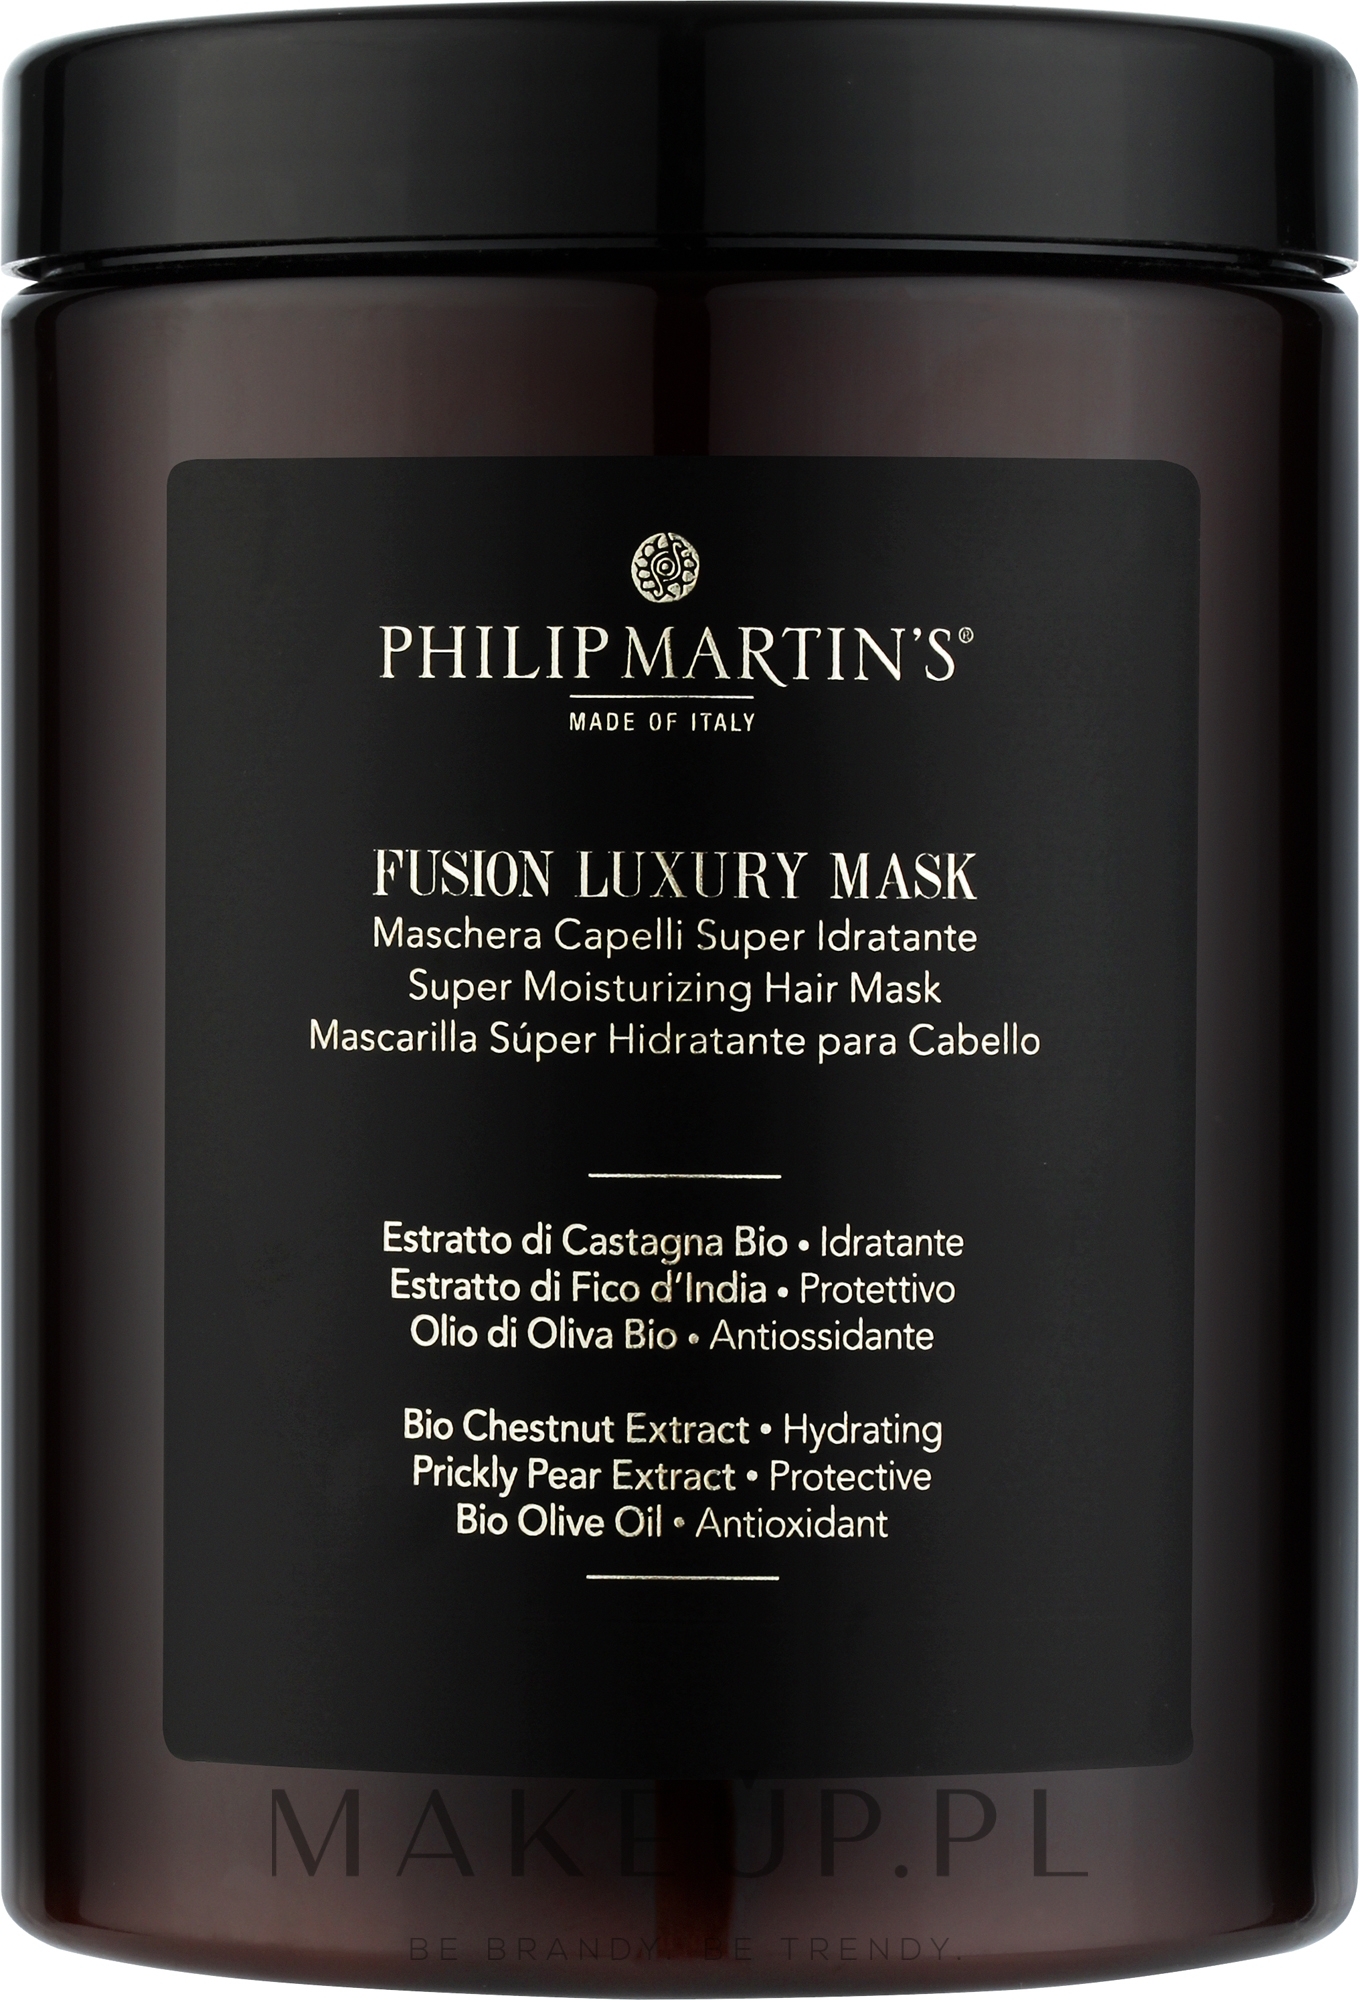 Super nawilżająca maska do włosów - Philip Martin's Fusion Luxury Mask — Zdjęcie 1000 ml